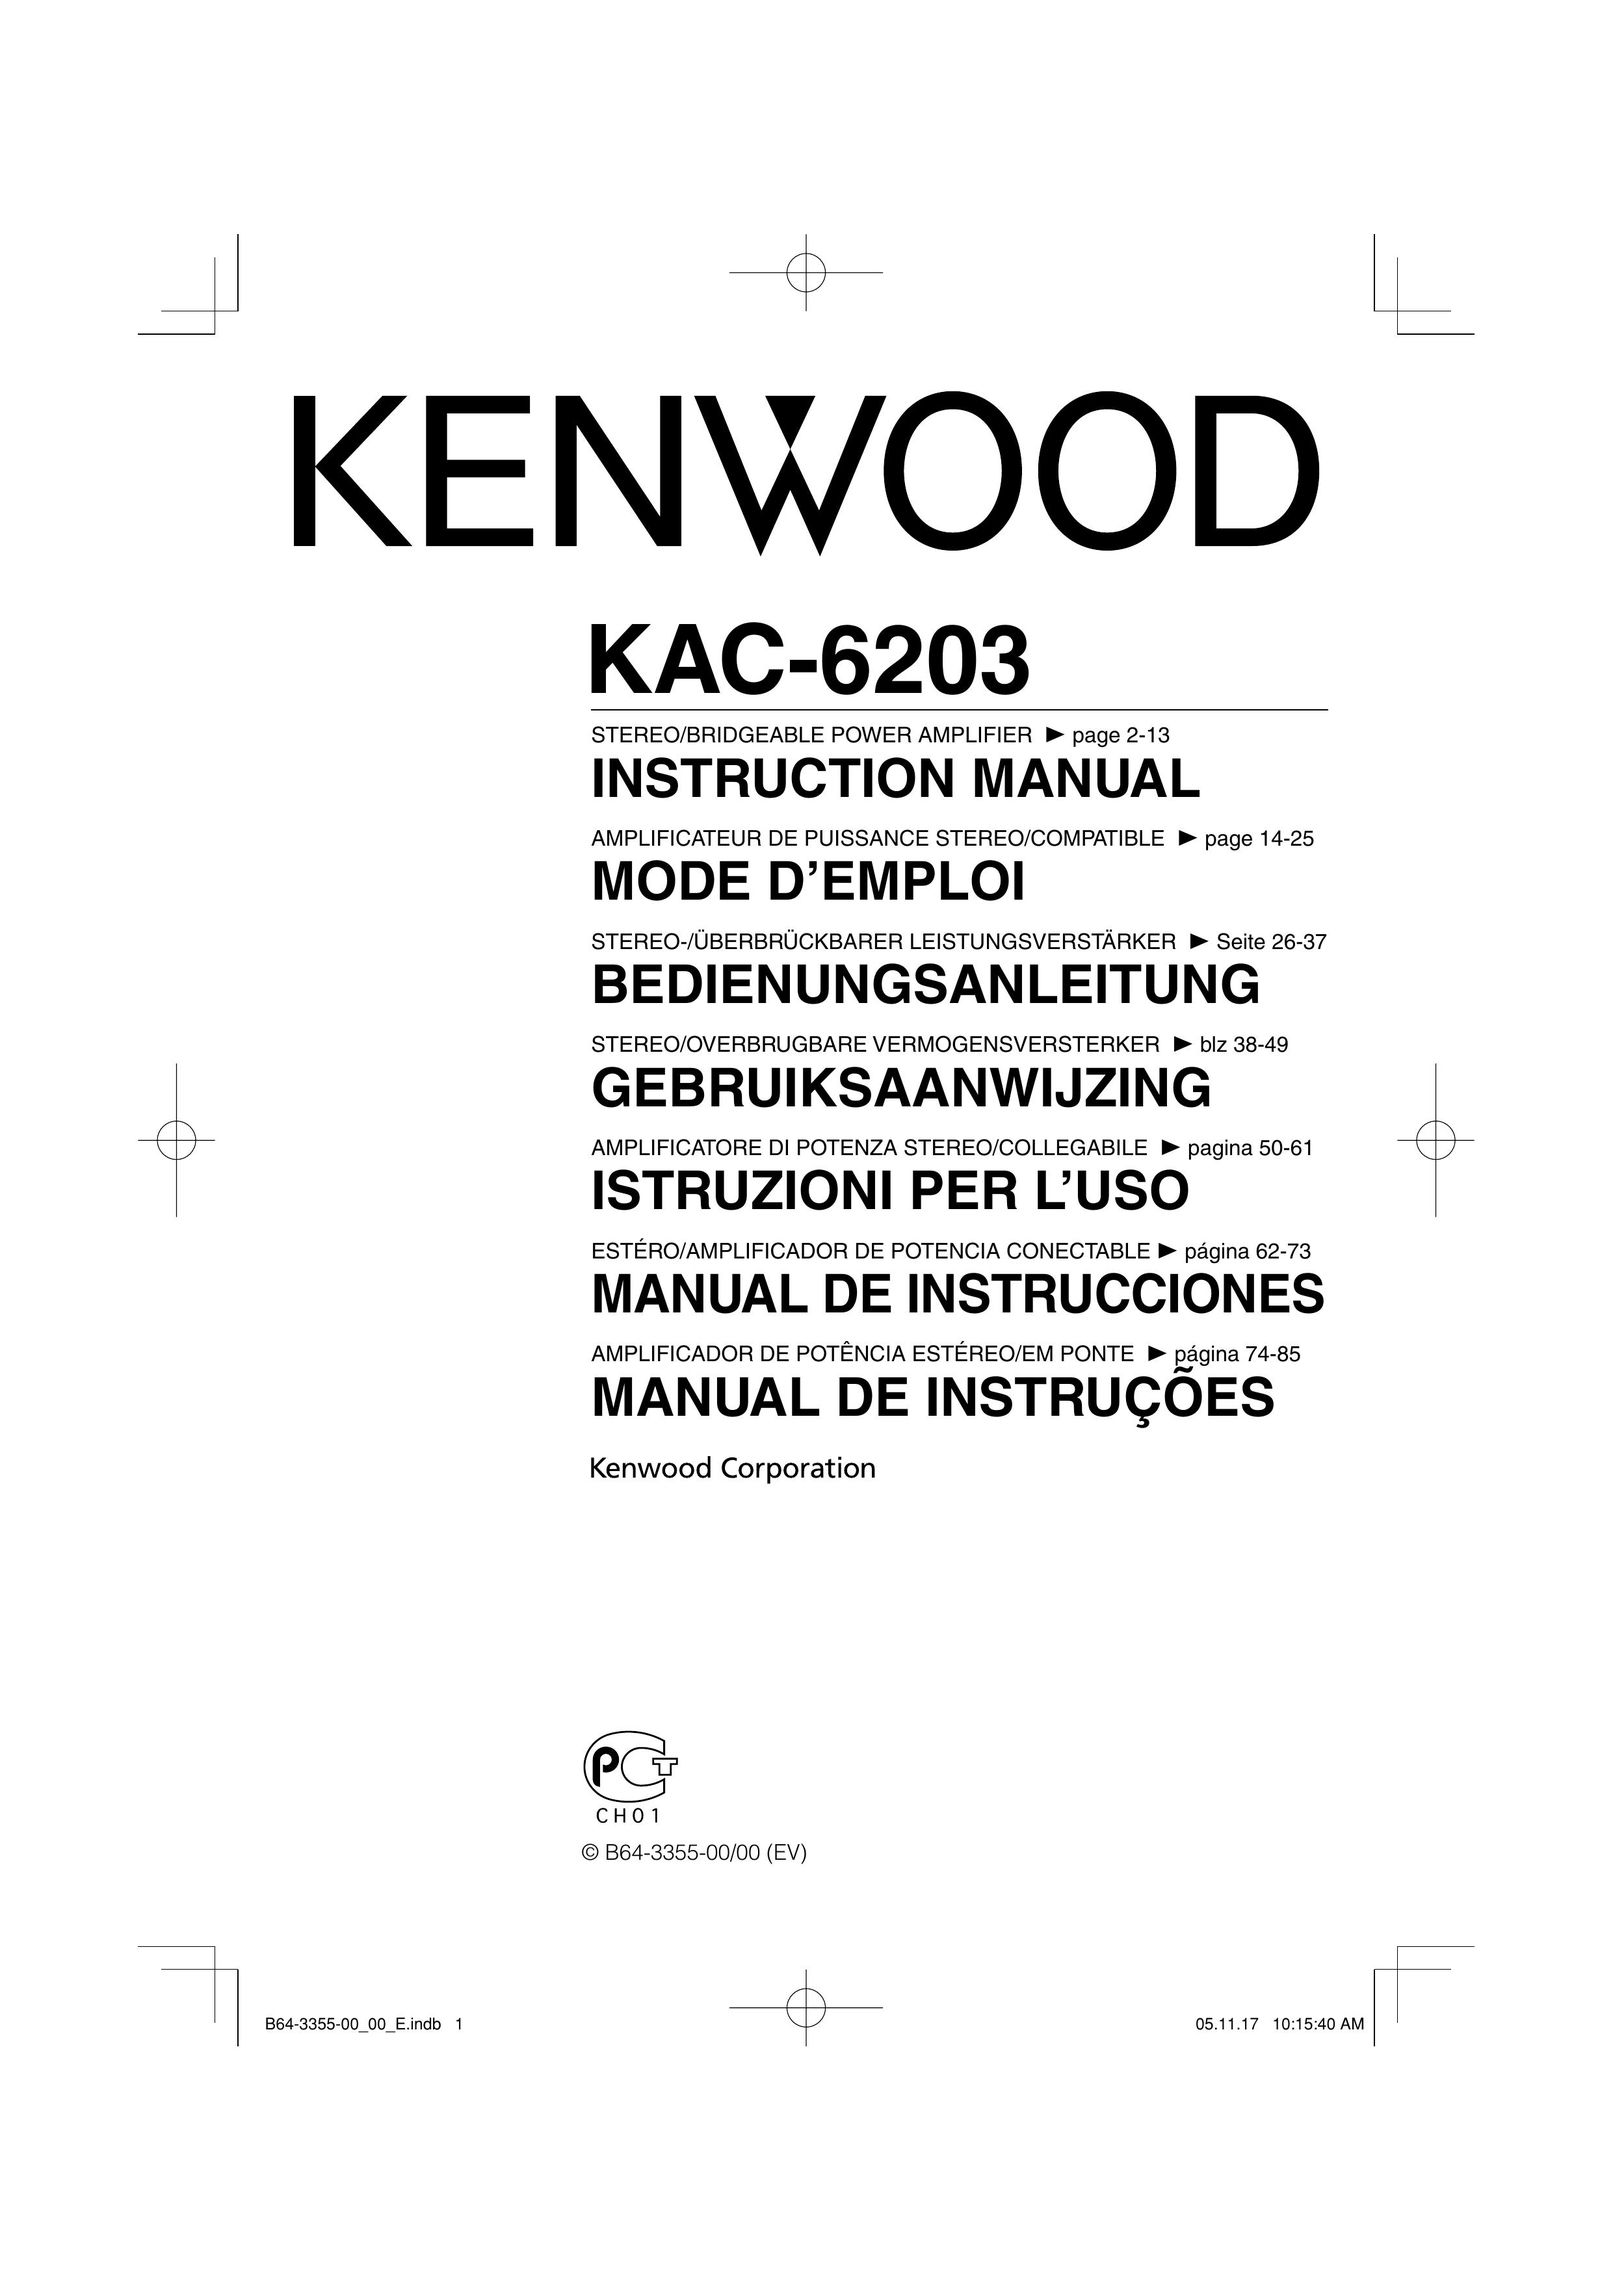 Kenwood KAC-6203 Stereo Amplifier User Manual